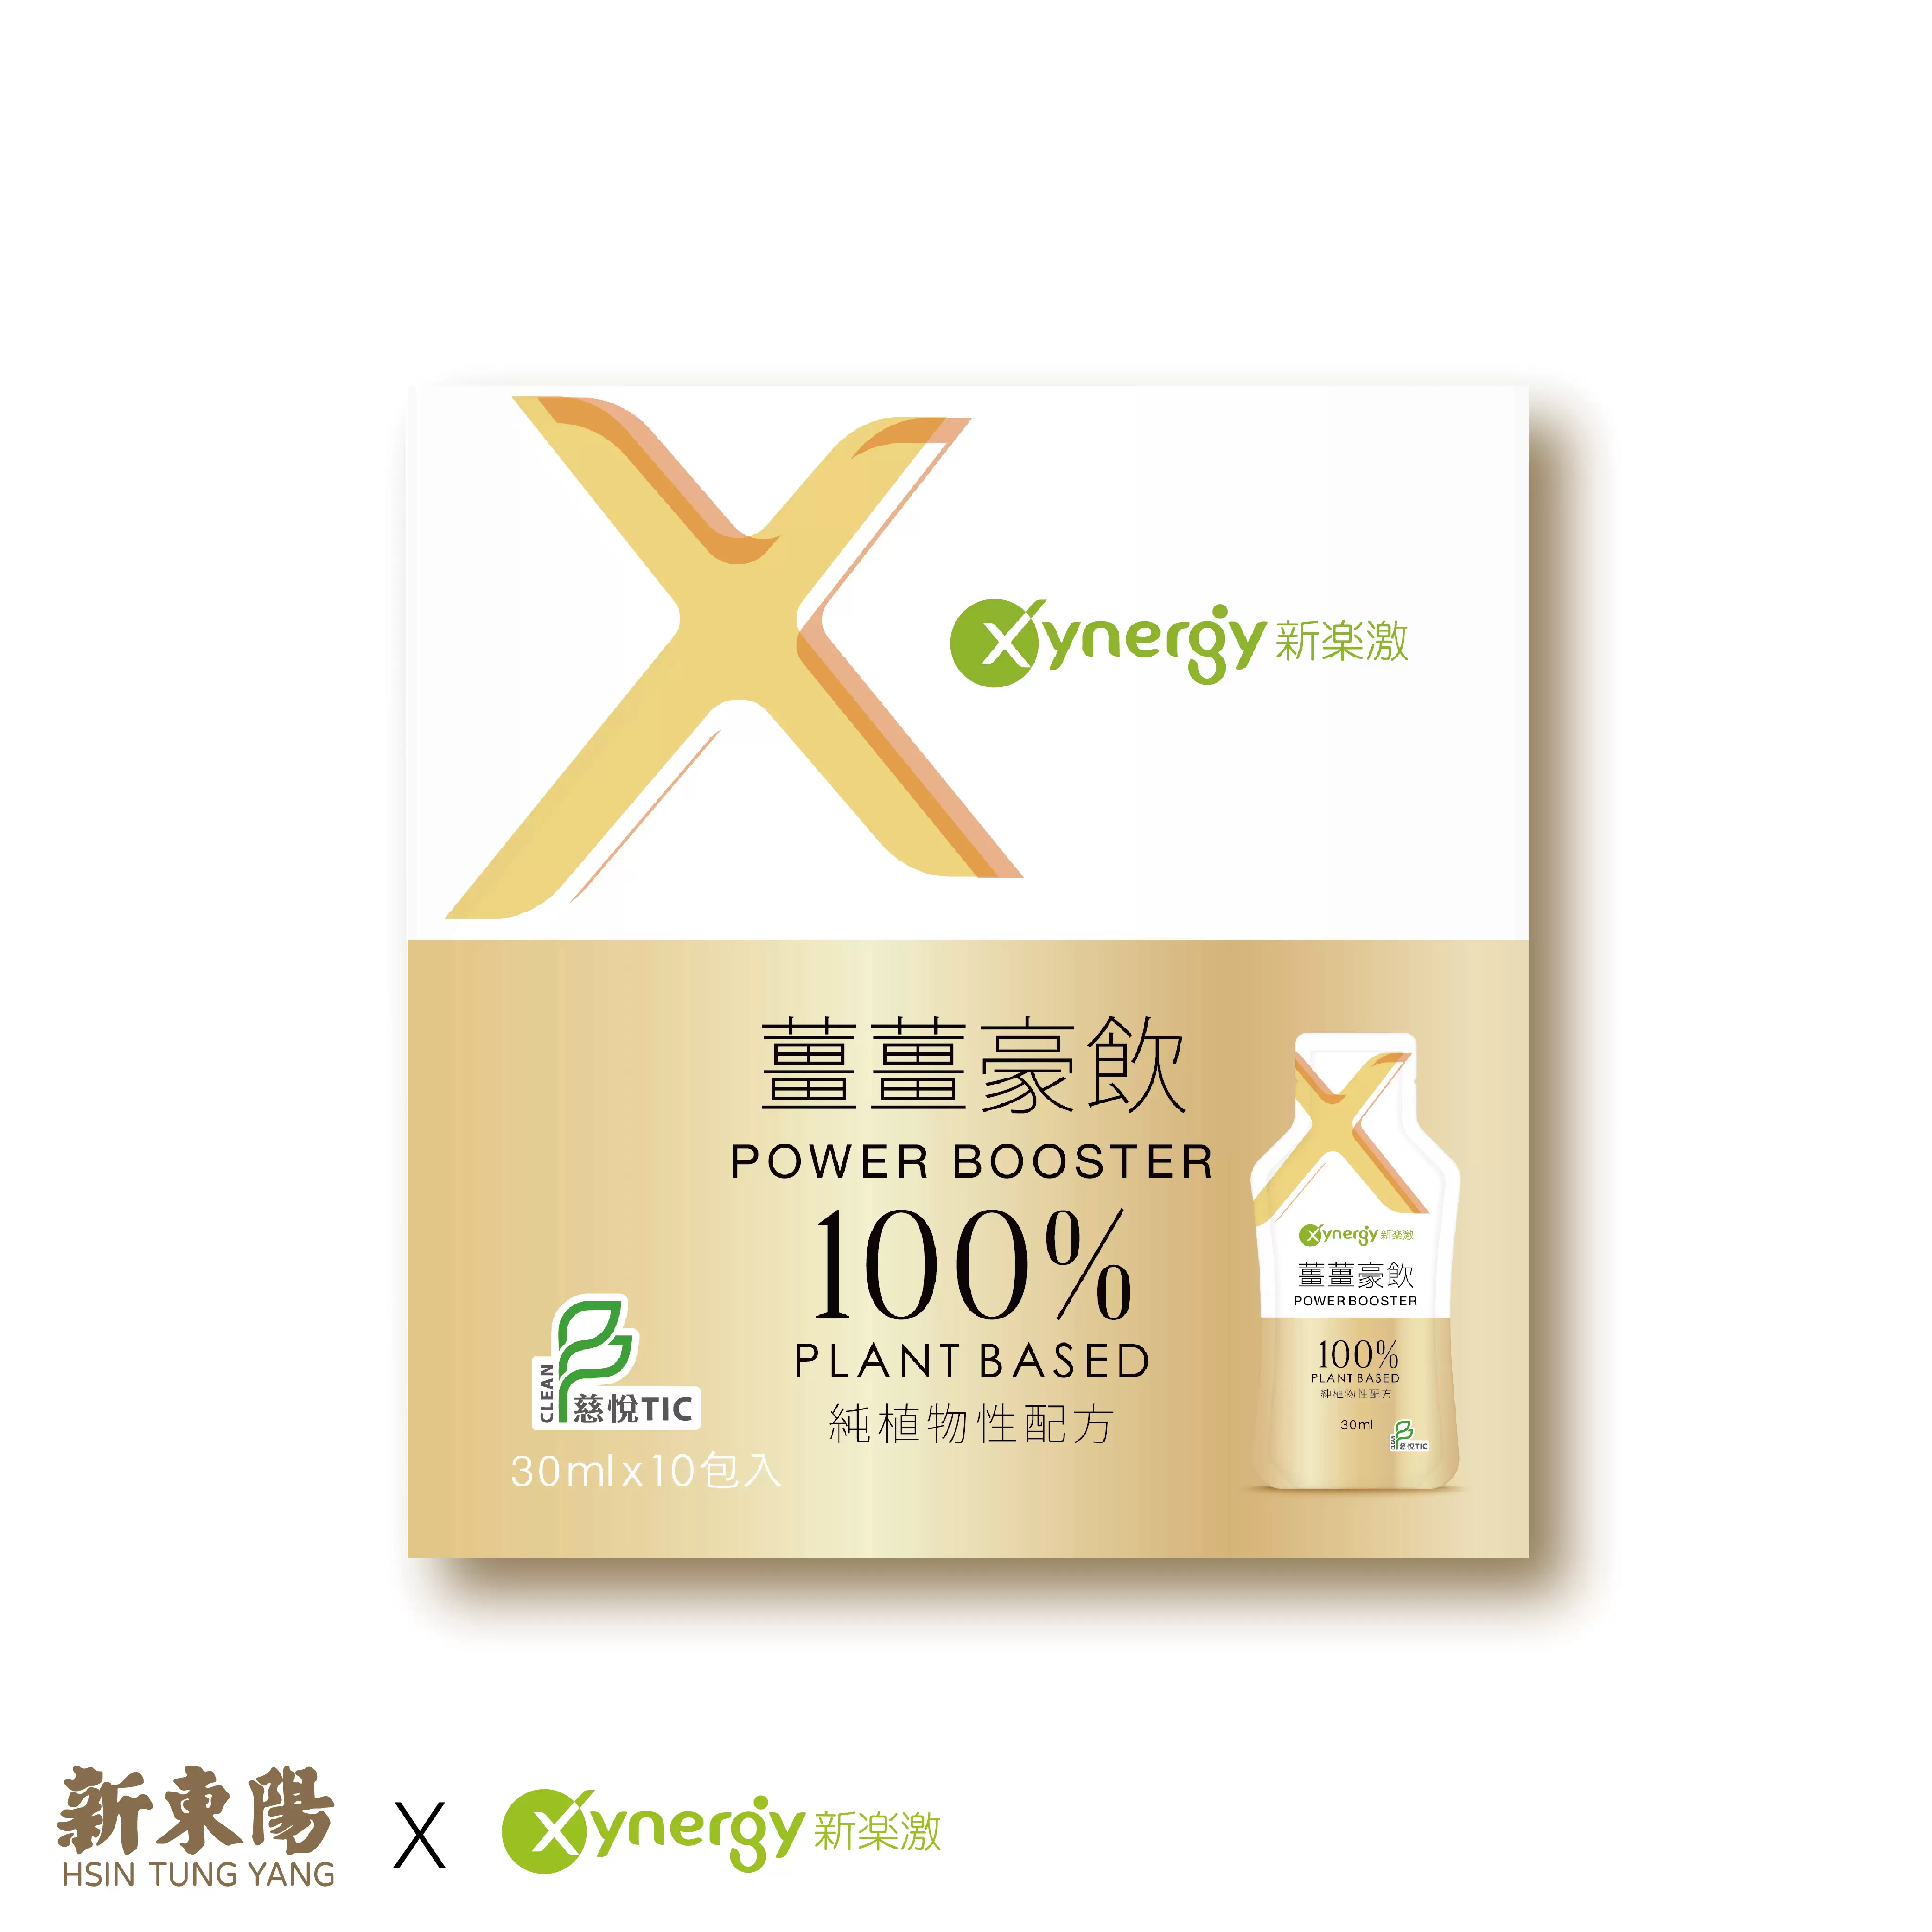 《新東陽x新樂激》Xynergy新樂激薑薑豪飲 30ml/包x10包，共1盒